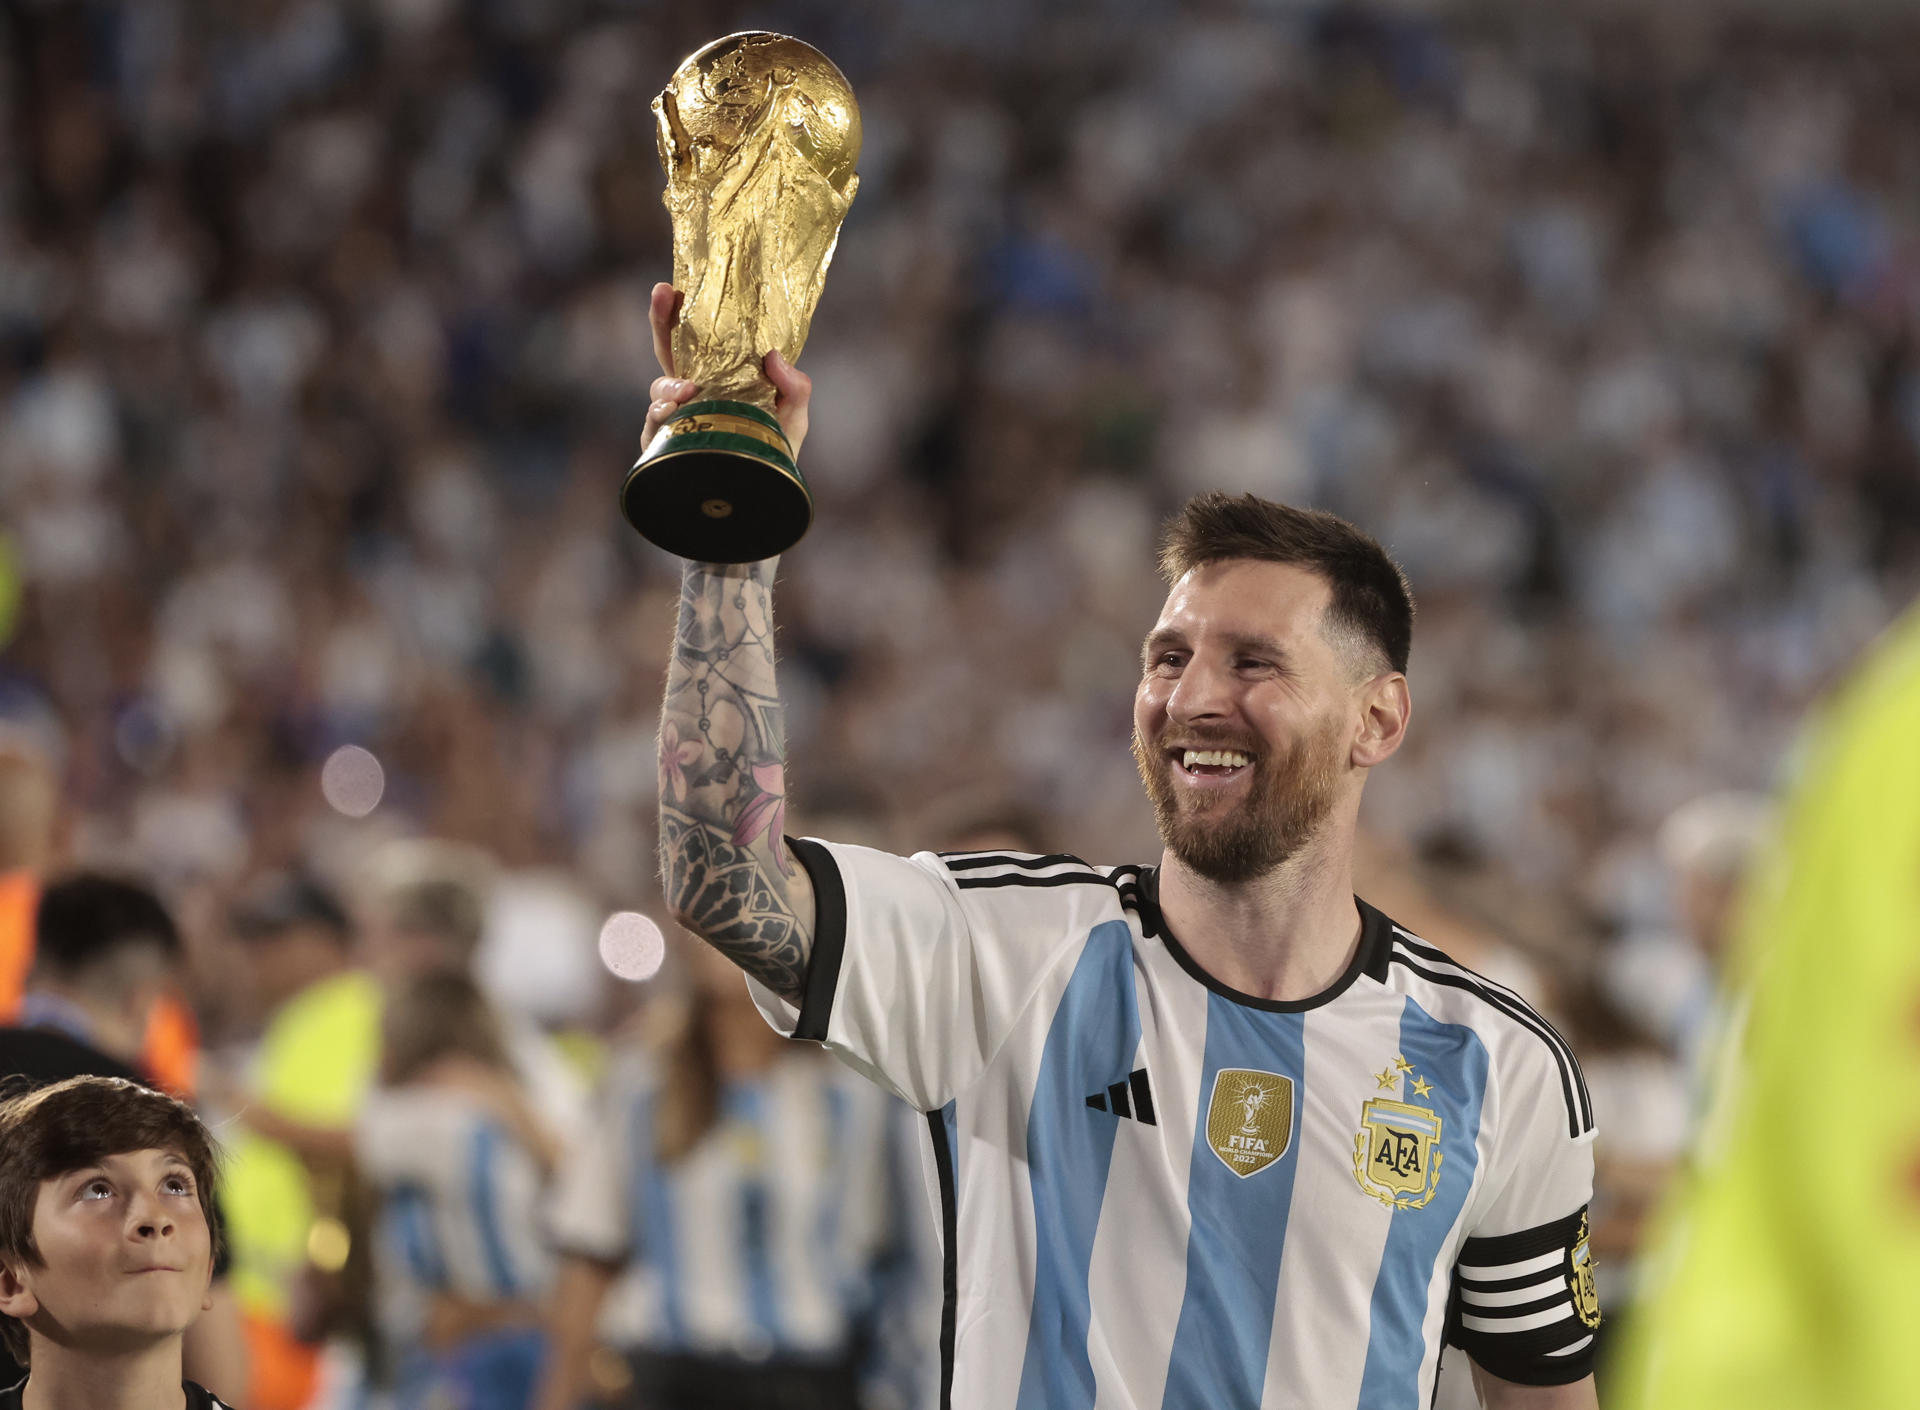 Lionel Messi, capitán de la selección nacional de fútbol Argentina, fue registrado este jueves, 23 de marzo, al caminar con el trofeo de la Copa Mundo, al final de un partido amistoso contra Panamá, en el estadio Monumental, en Buenos Aires (Argentina). EFE/Juan Ignacio Roncoroni